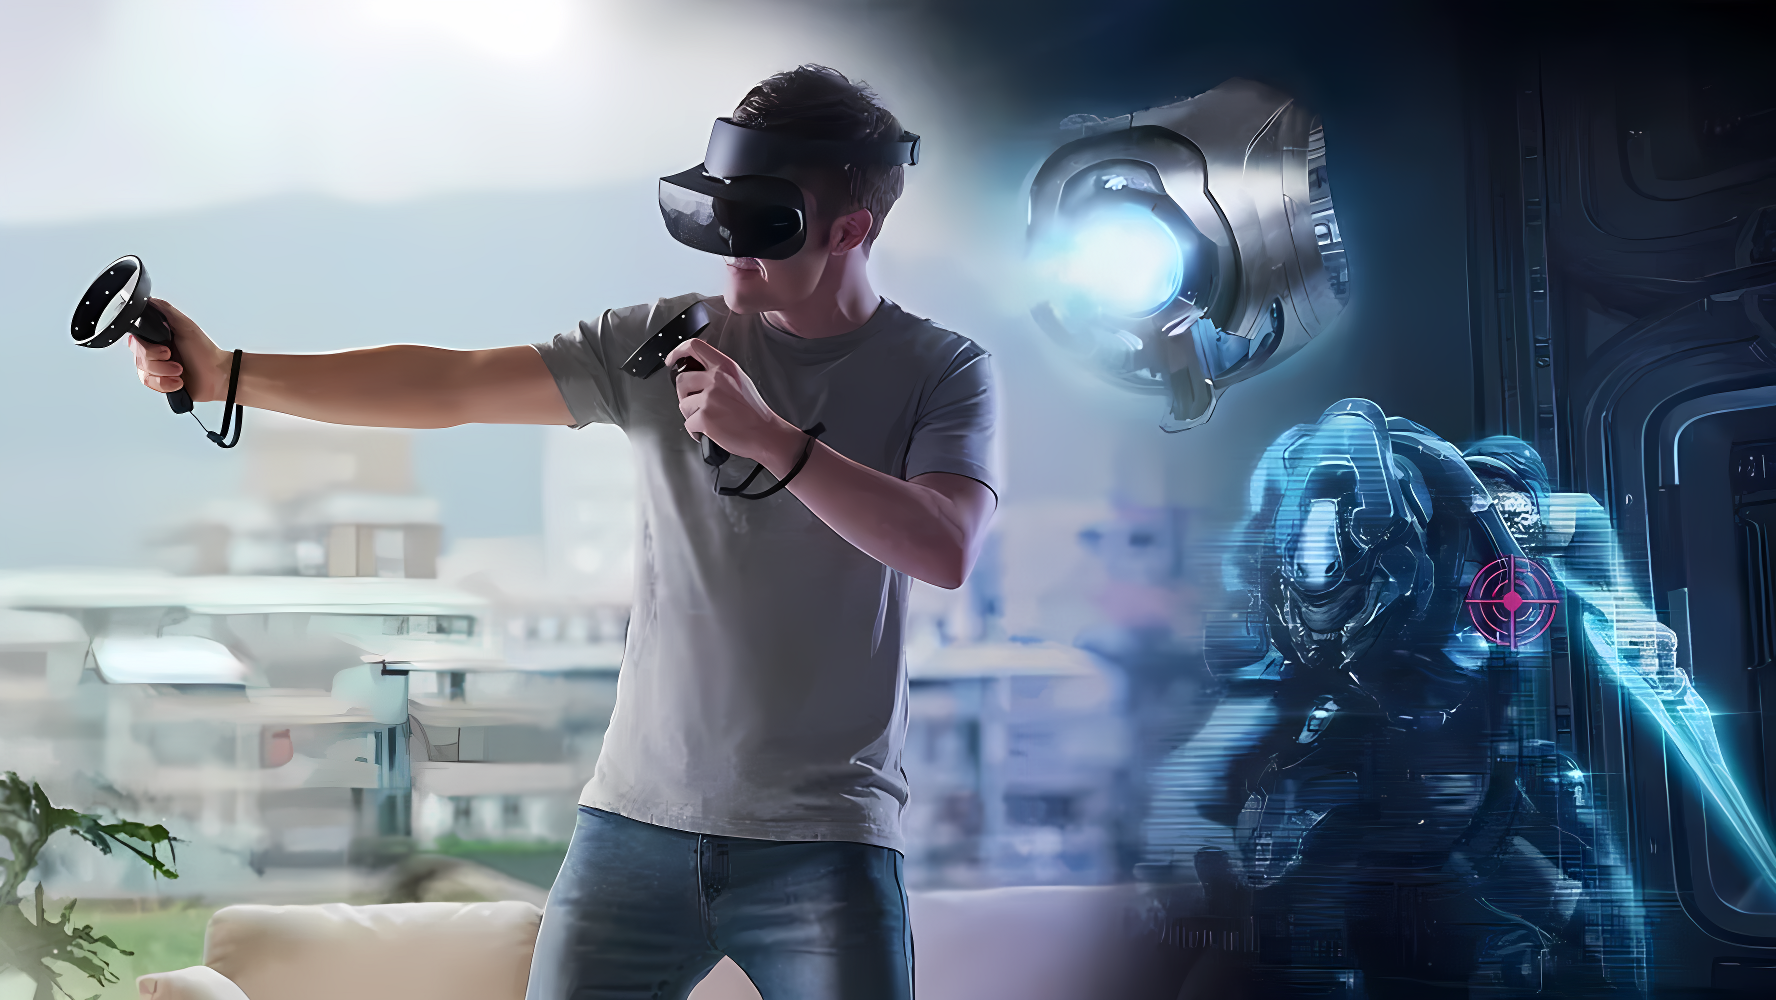 一位男士戴着虚拟现实头盔，手持控制器，似乎正在家中体验沉浸式VR游戏，背景有科幻元素。